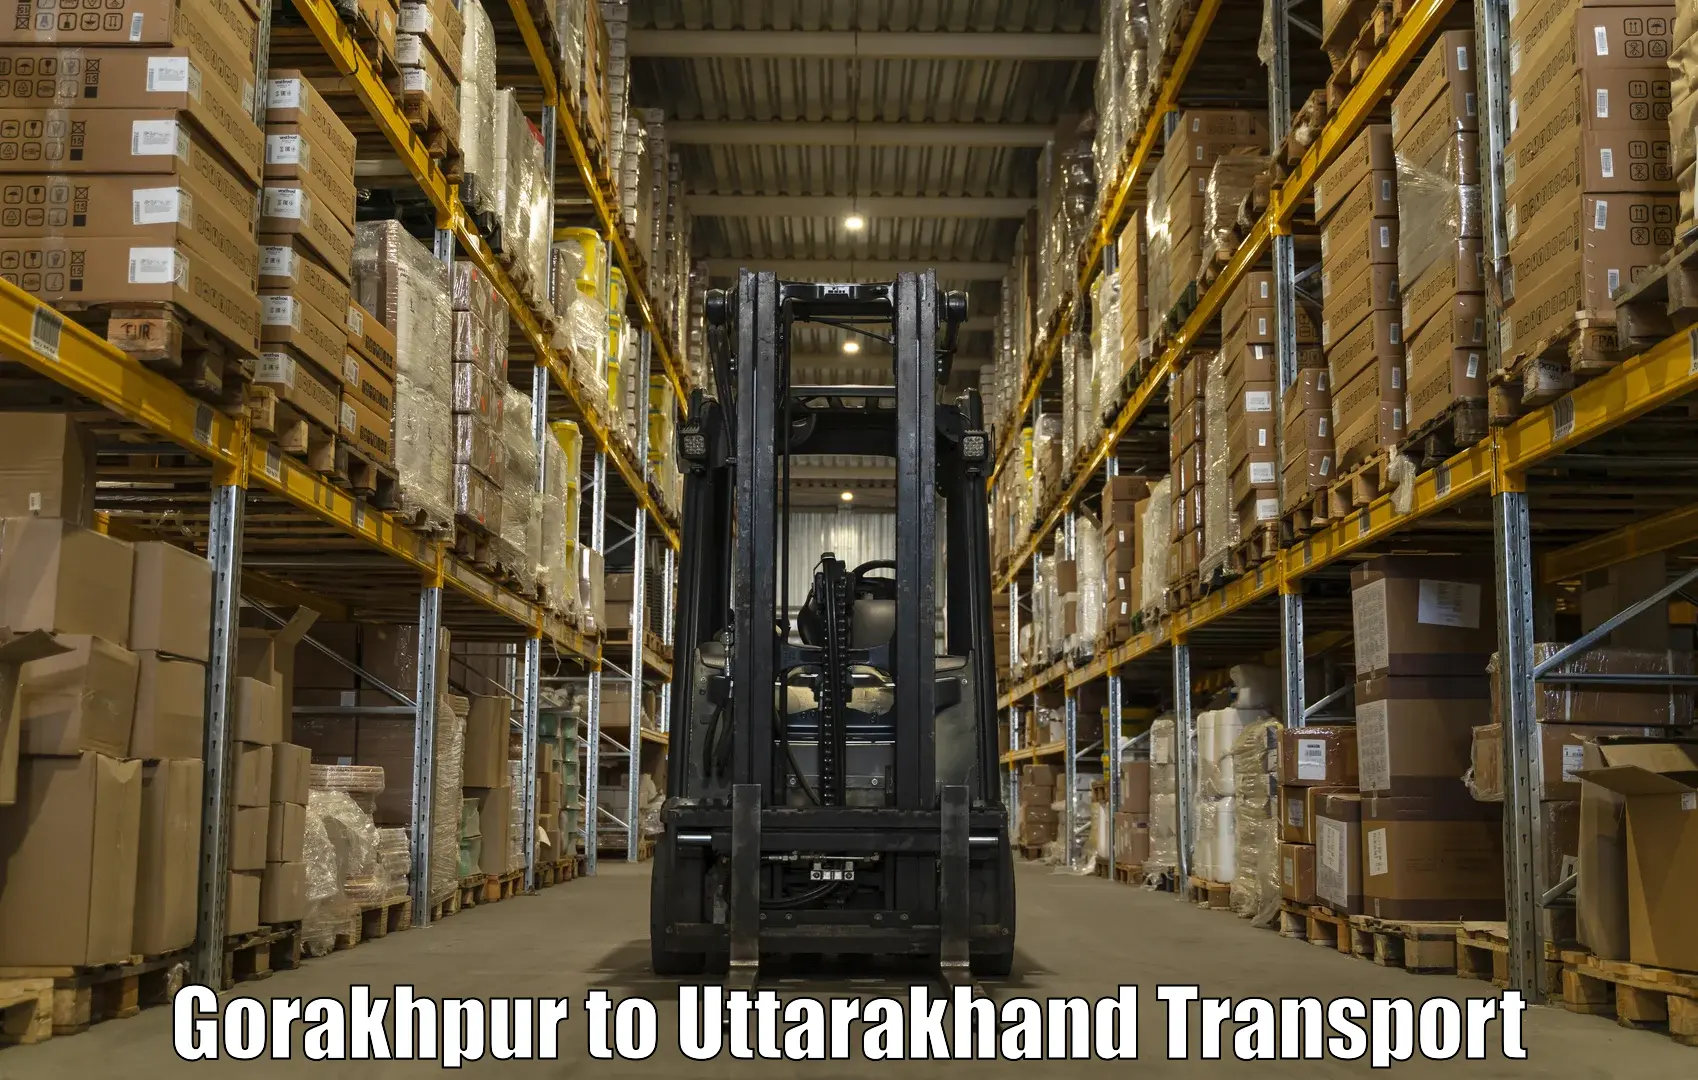 Cargo train transport services Gorakhpur to Haridwar